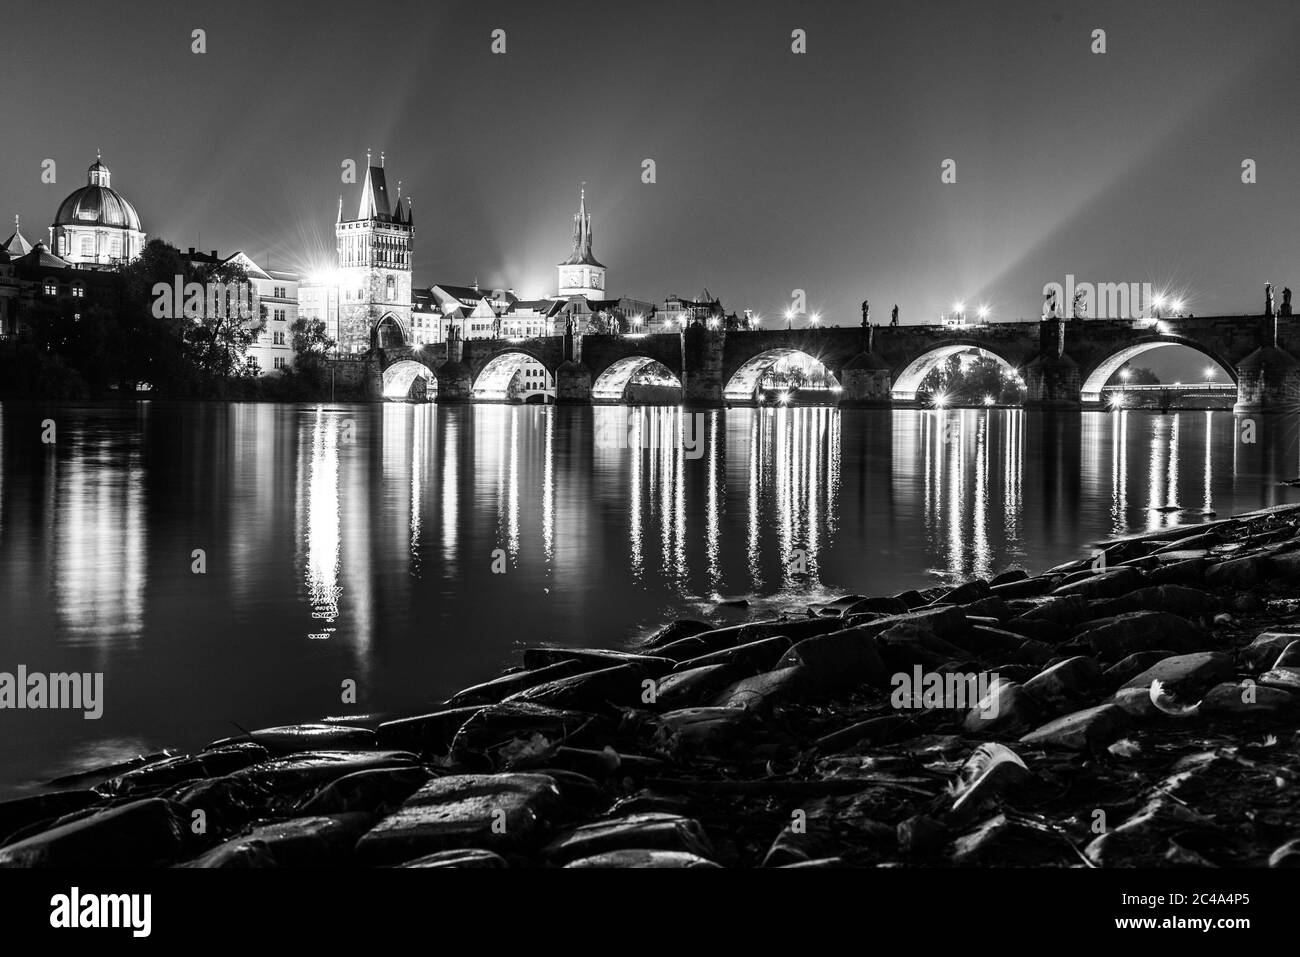 Moldava River e Ponte Carlo con la Torre del Ponte della Citta' Vecchia di notte, Praga, Cechi. Sito patrimonio dell'umanità dell'UNESCO. Immagine in bianco e nero. Foto Stock